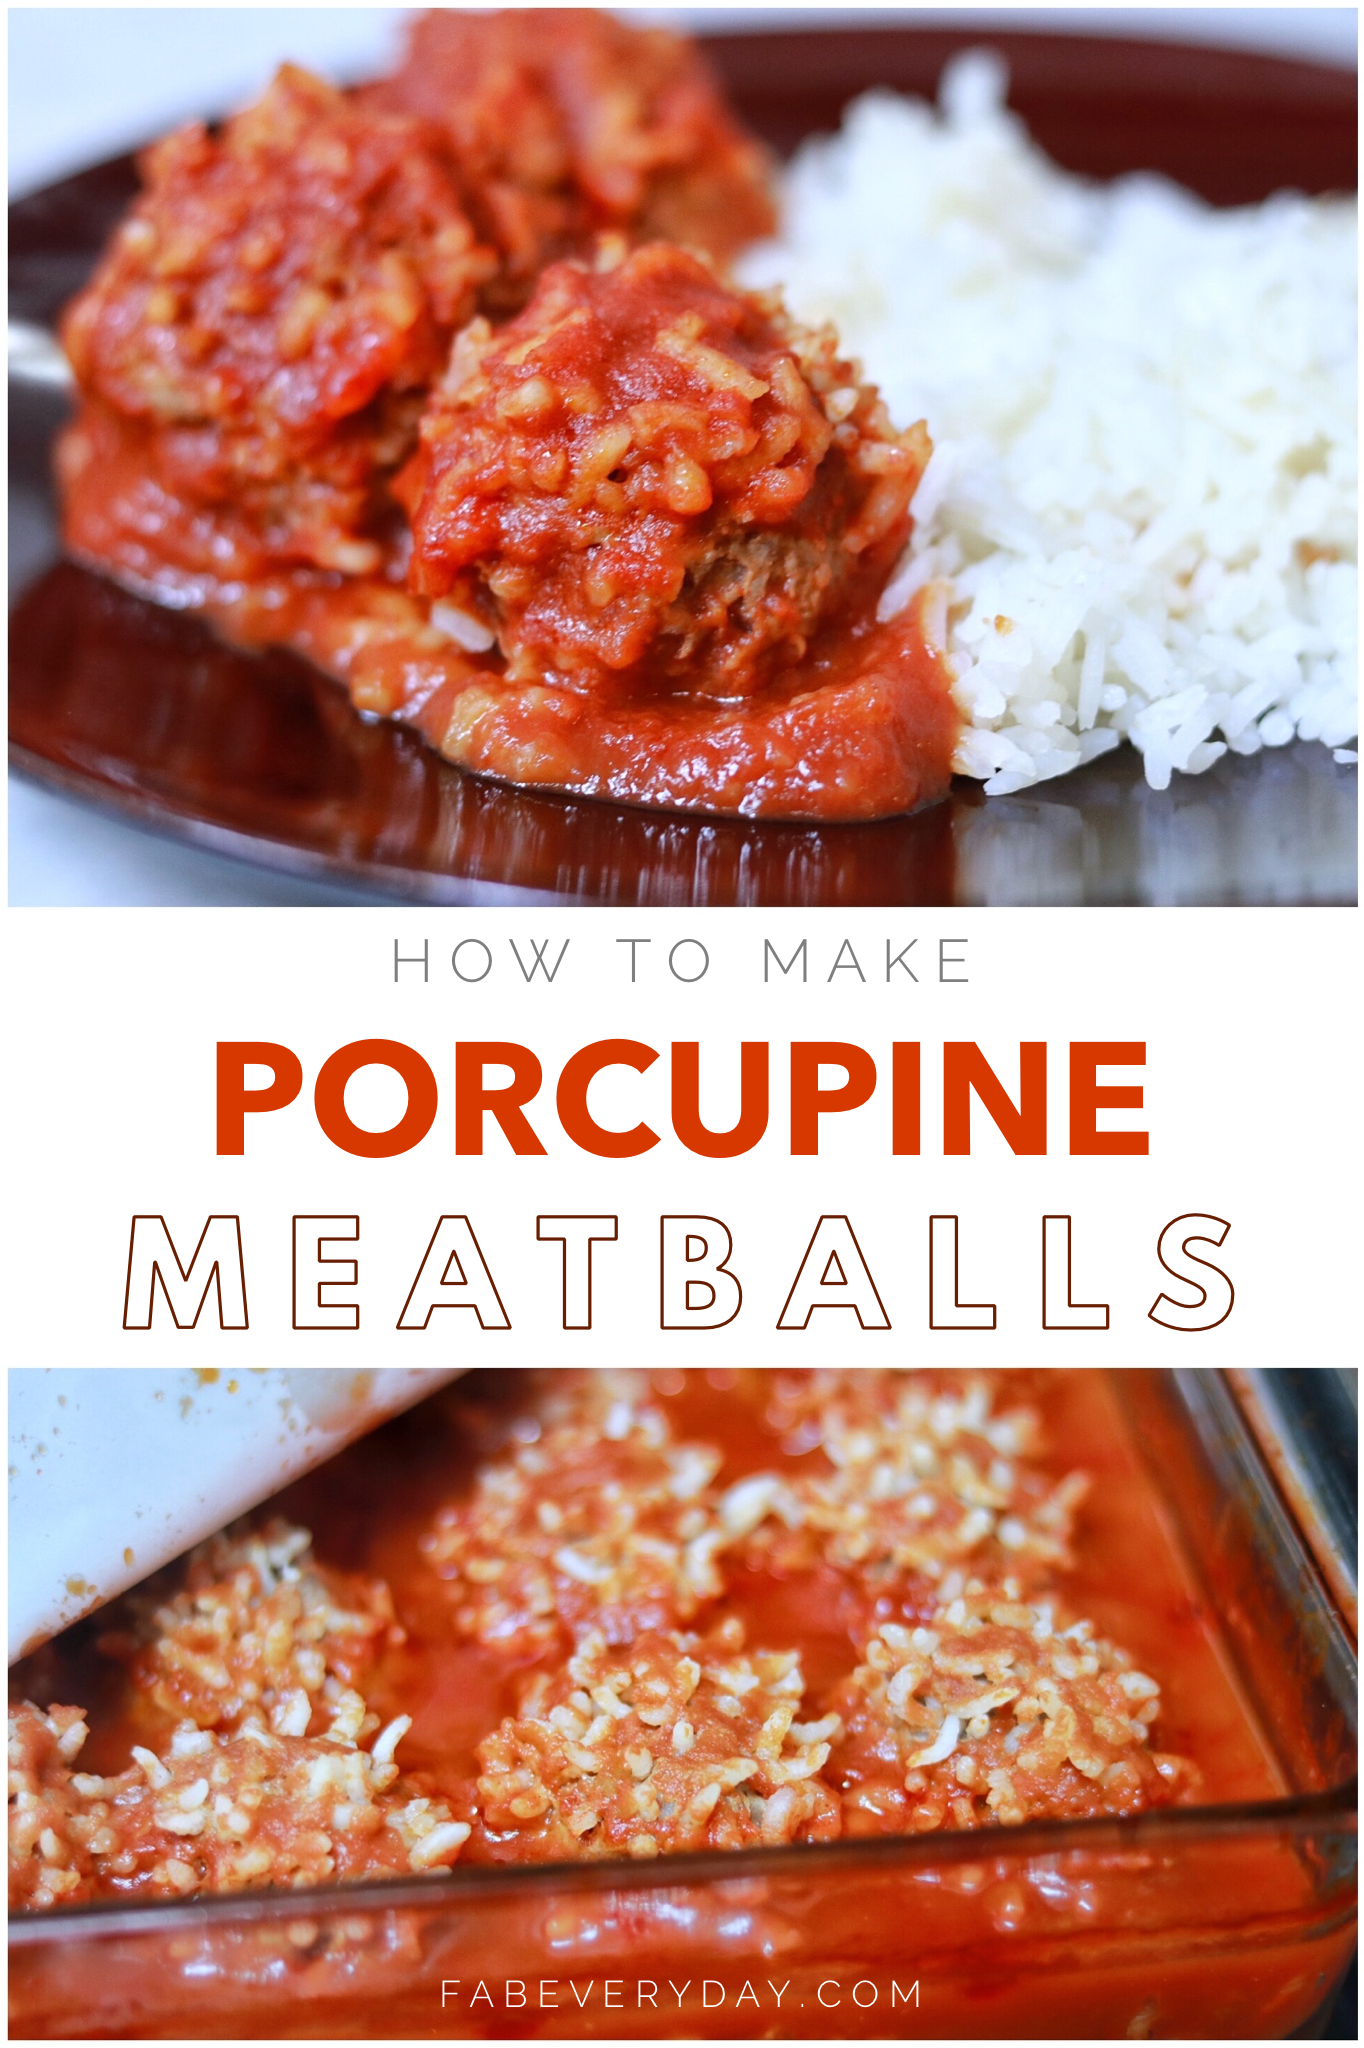 Porcupine Meatballs recipe